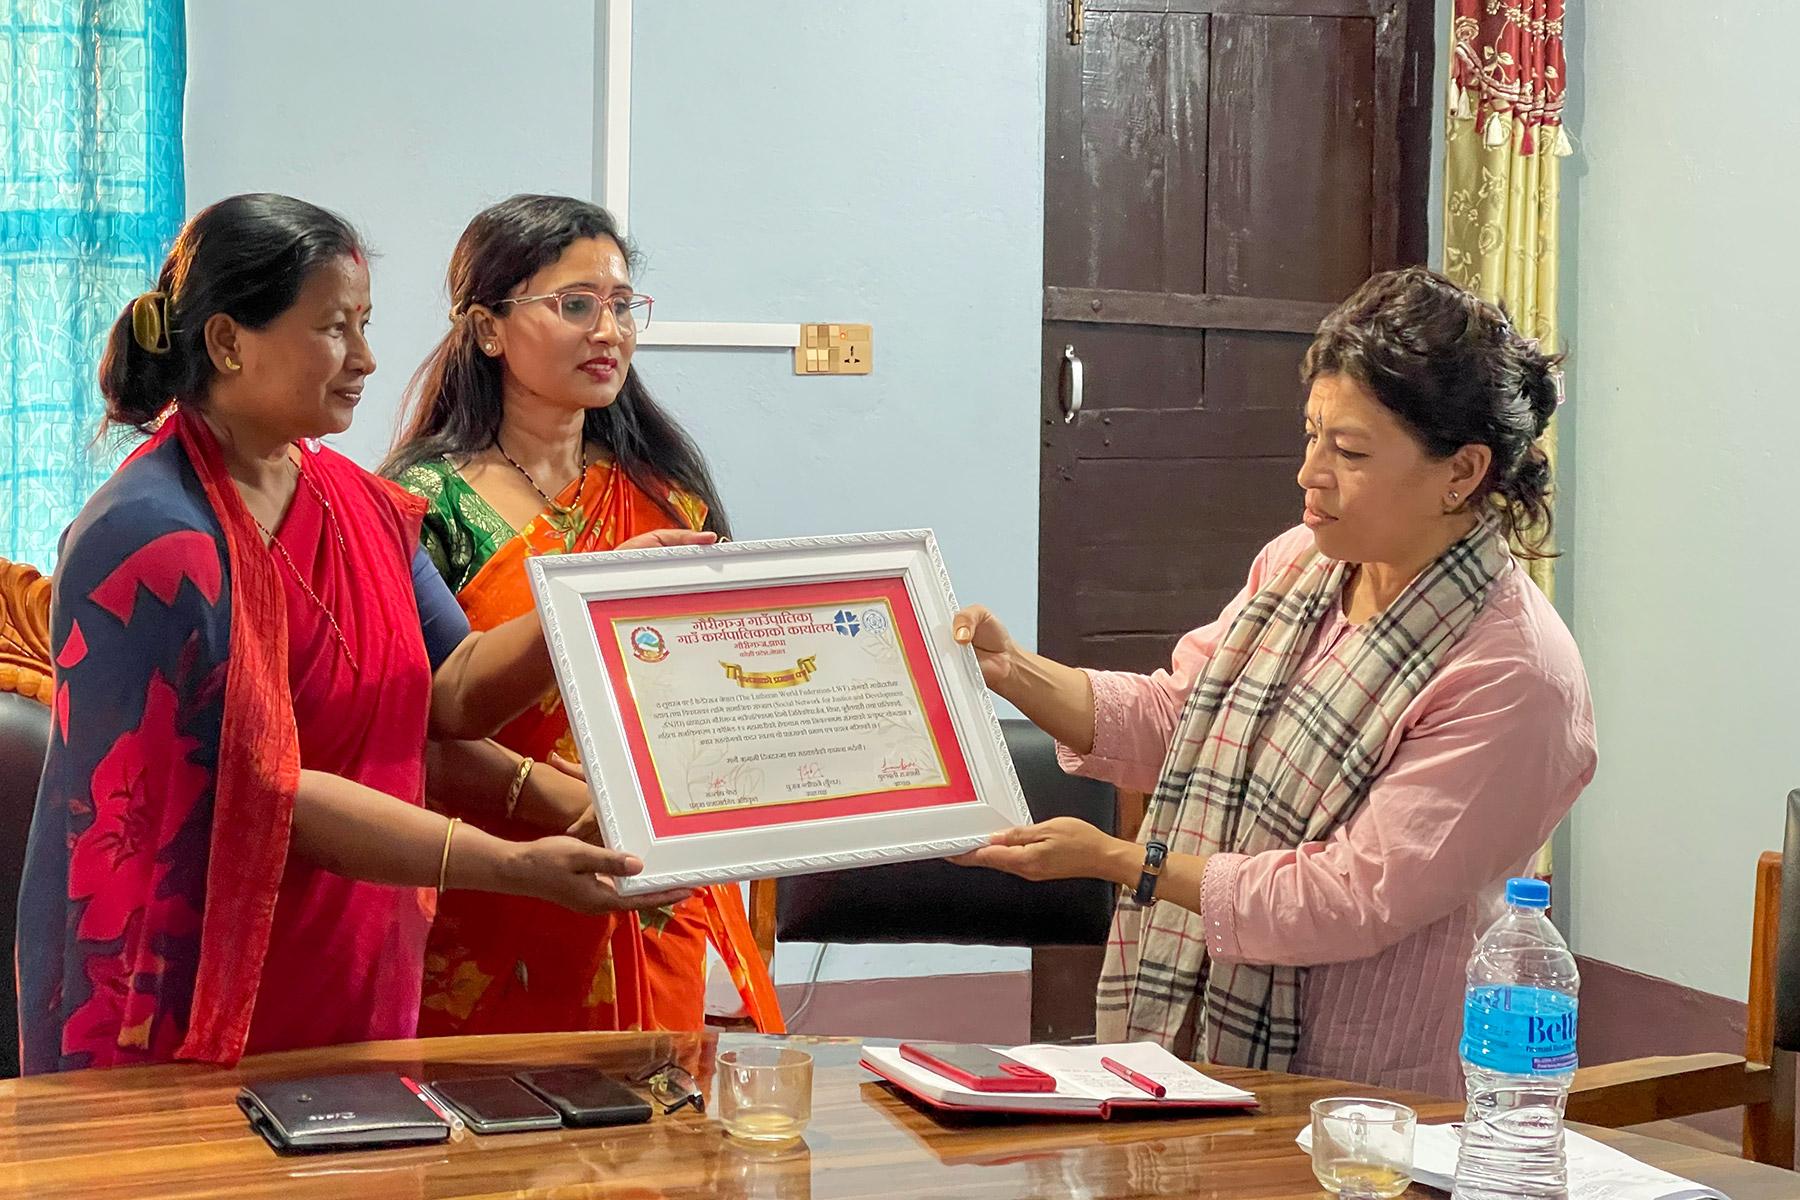 El representante de la FLM en Nepal, Dr. Bijaya Bajracharya (derecha), recibe una carta de agradecimiento de los líderes del gobierno local. La carta fue emitida por el gobierno local y agradece la colaboración con la FLM y su organización local asociada SNJD en el distrito de Jhapa. Foto: FLM/ Y. Gautam